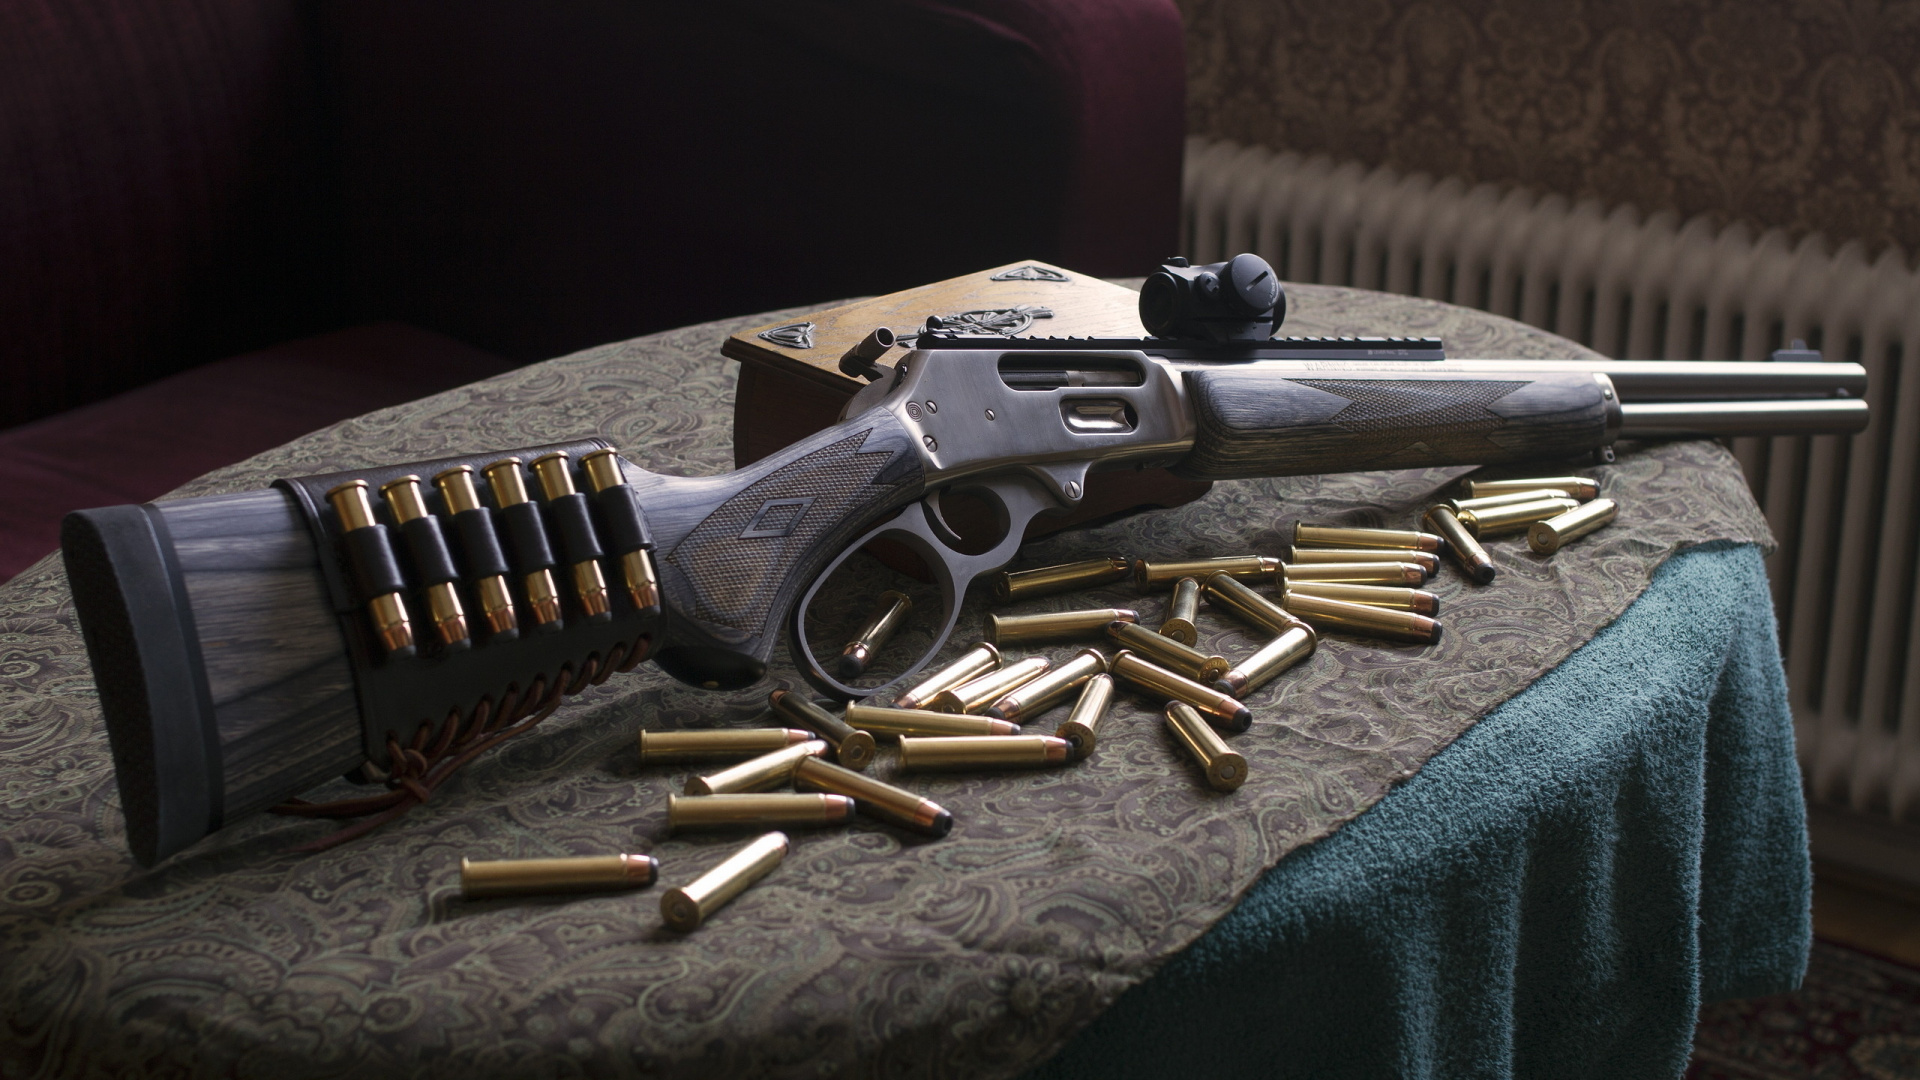 Feuerwaffe, Trigger, Gun Barrel, Luftgewehr, Revolver. Wallpaper in 1920x1080 Resolution